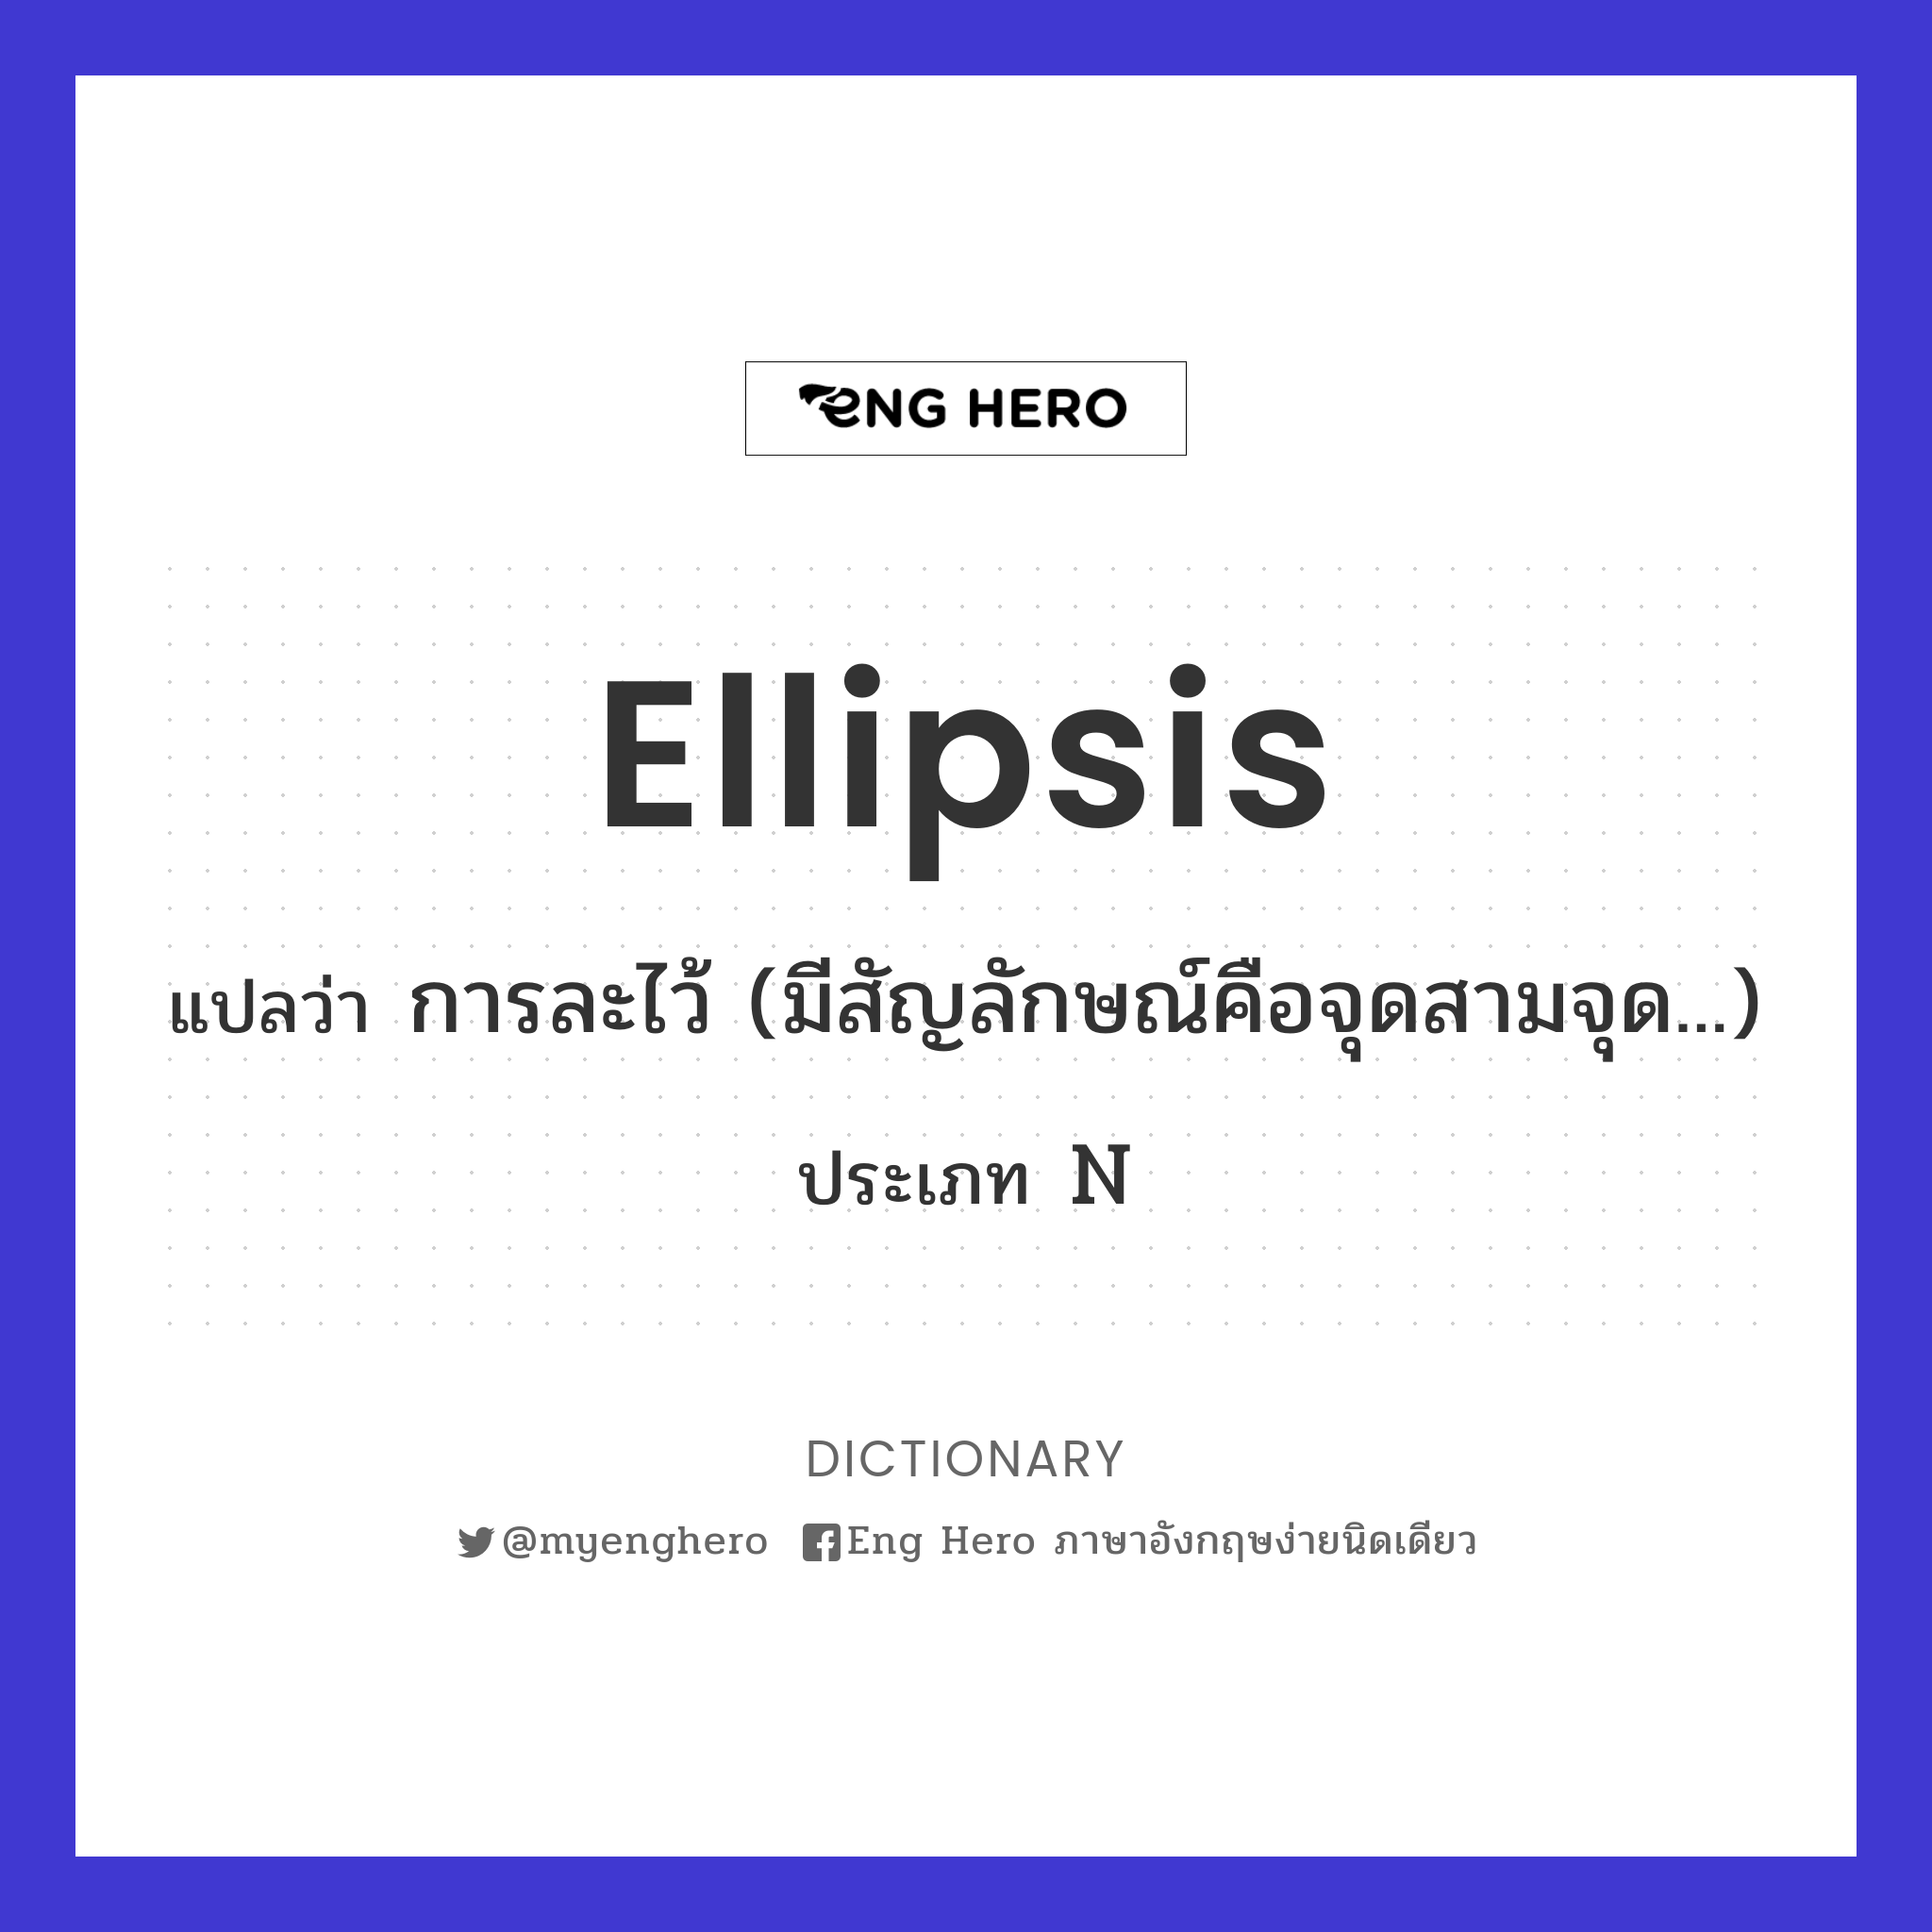 ellipsis